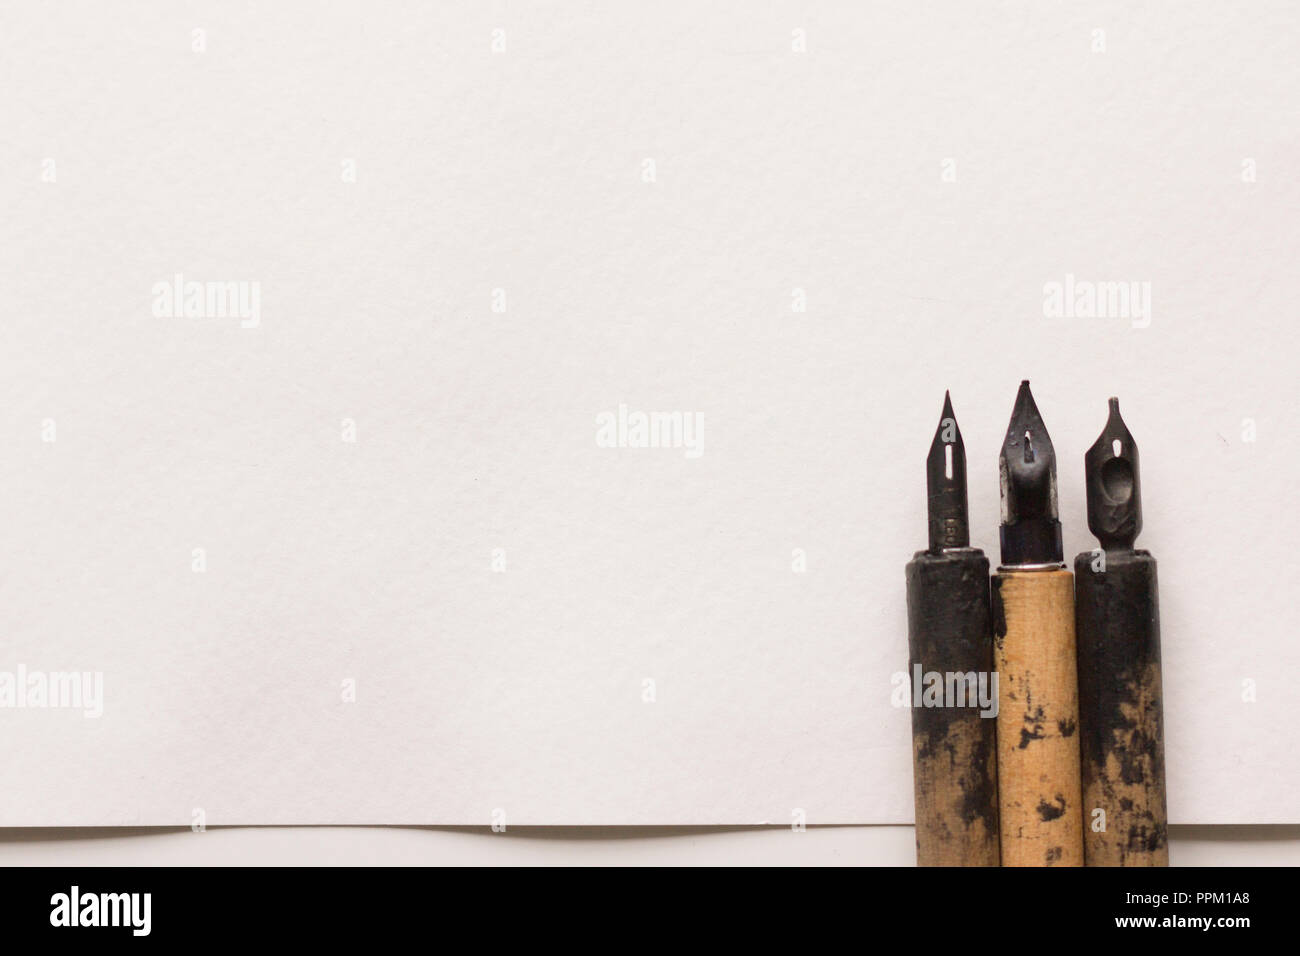 Eine alte nib-Stifte, ein Blatt texturiert, Aquarell Baumwolle Papier mit Platz für Text, Einladung, Brief, Gedicht. Stockfoto